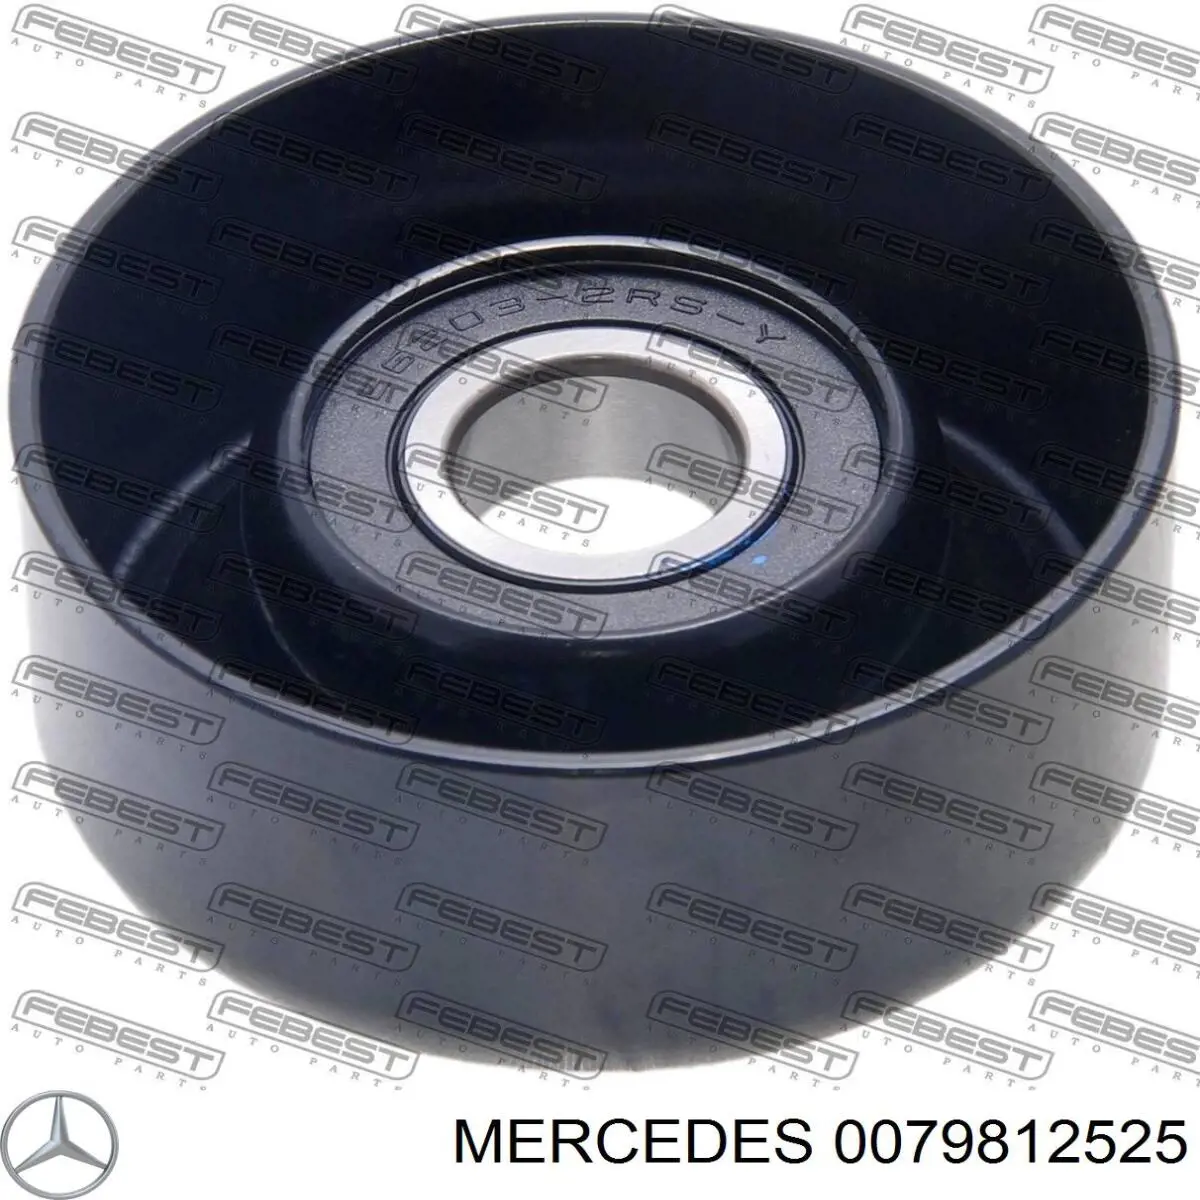 0079812525 Mercedes опорный подшипник первичного вала кпп (центрирующий подшипник маховика)